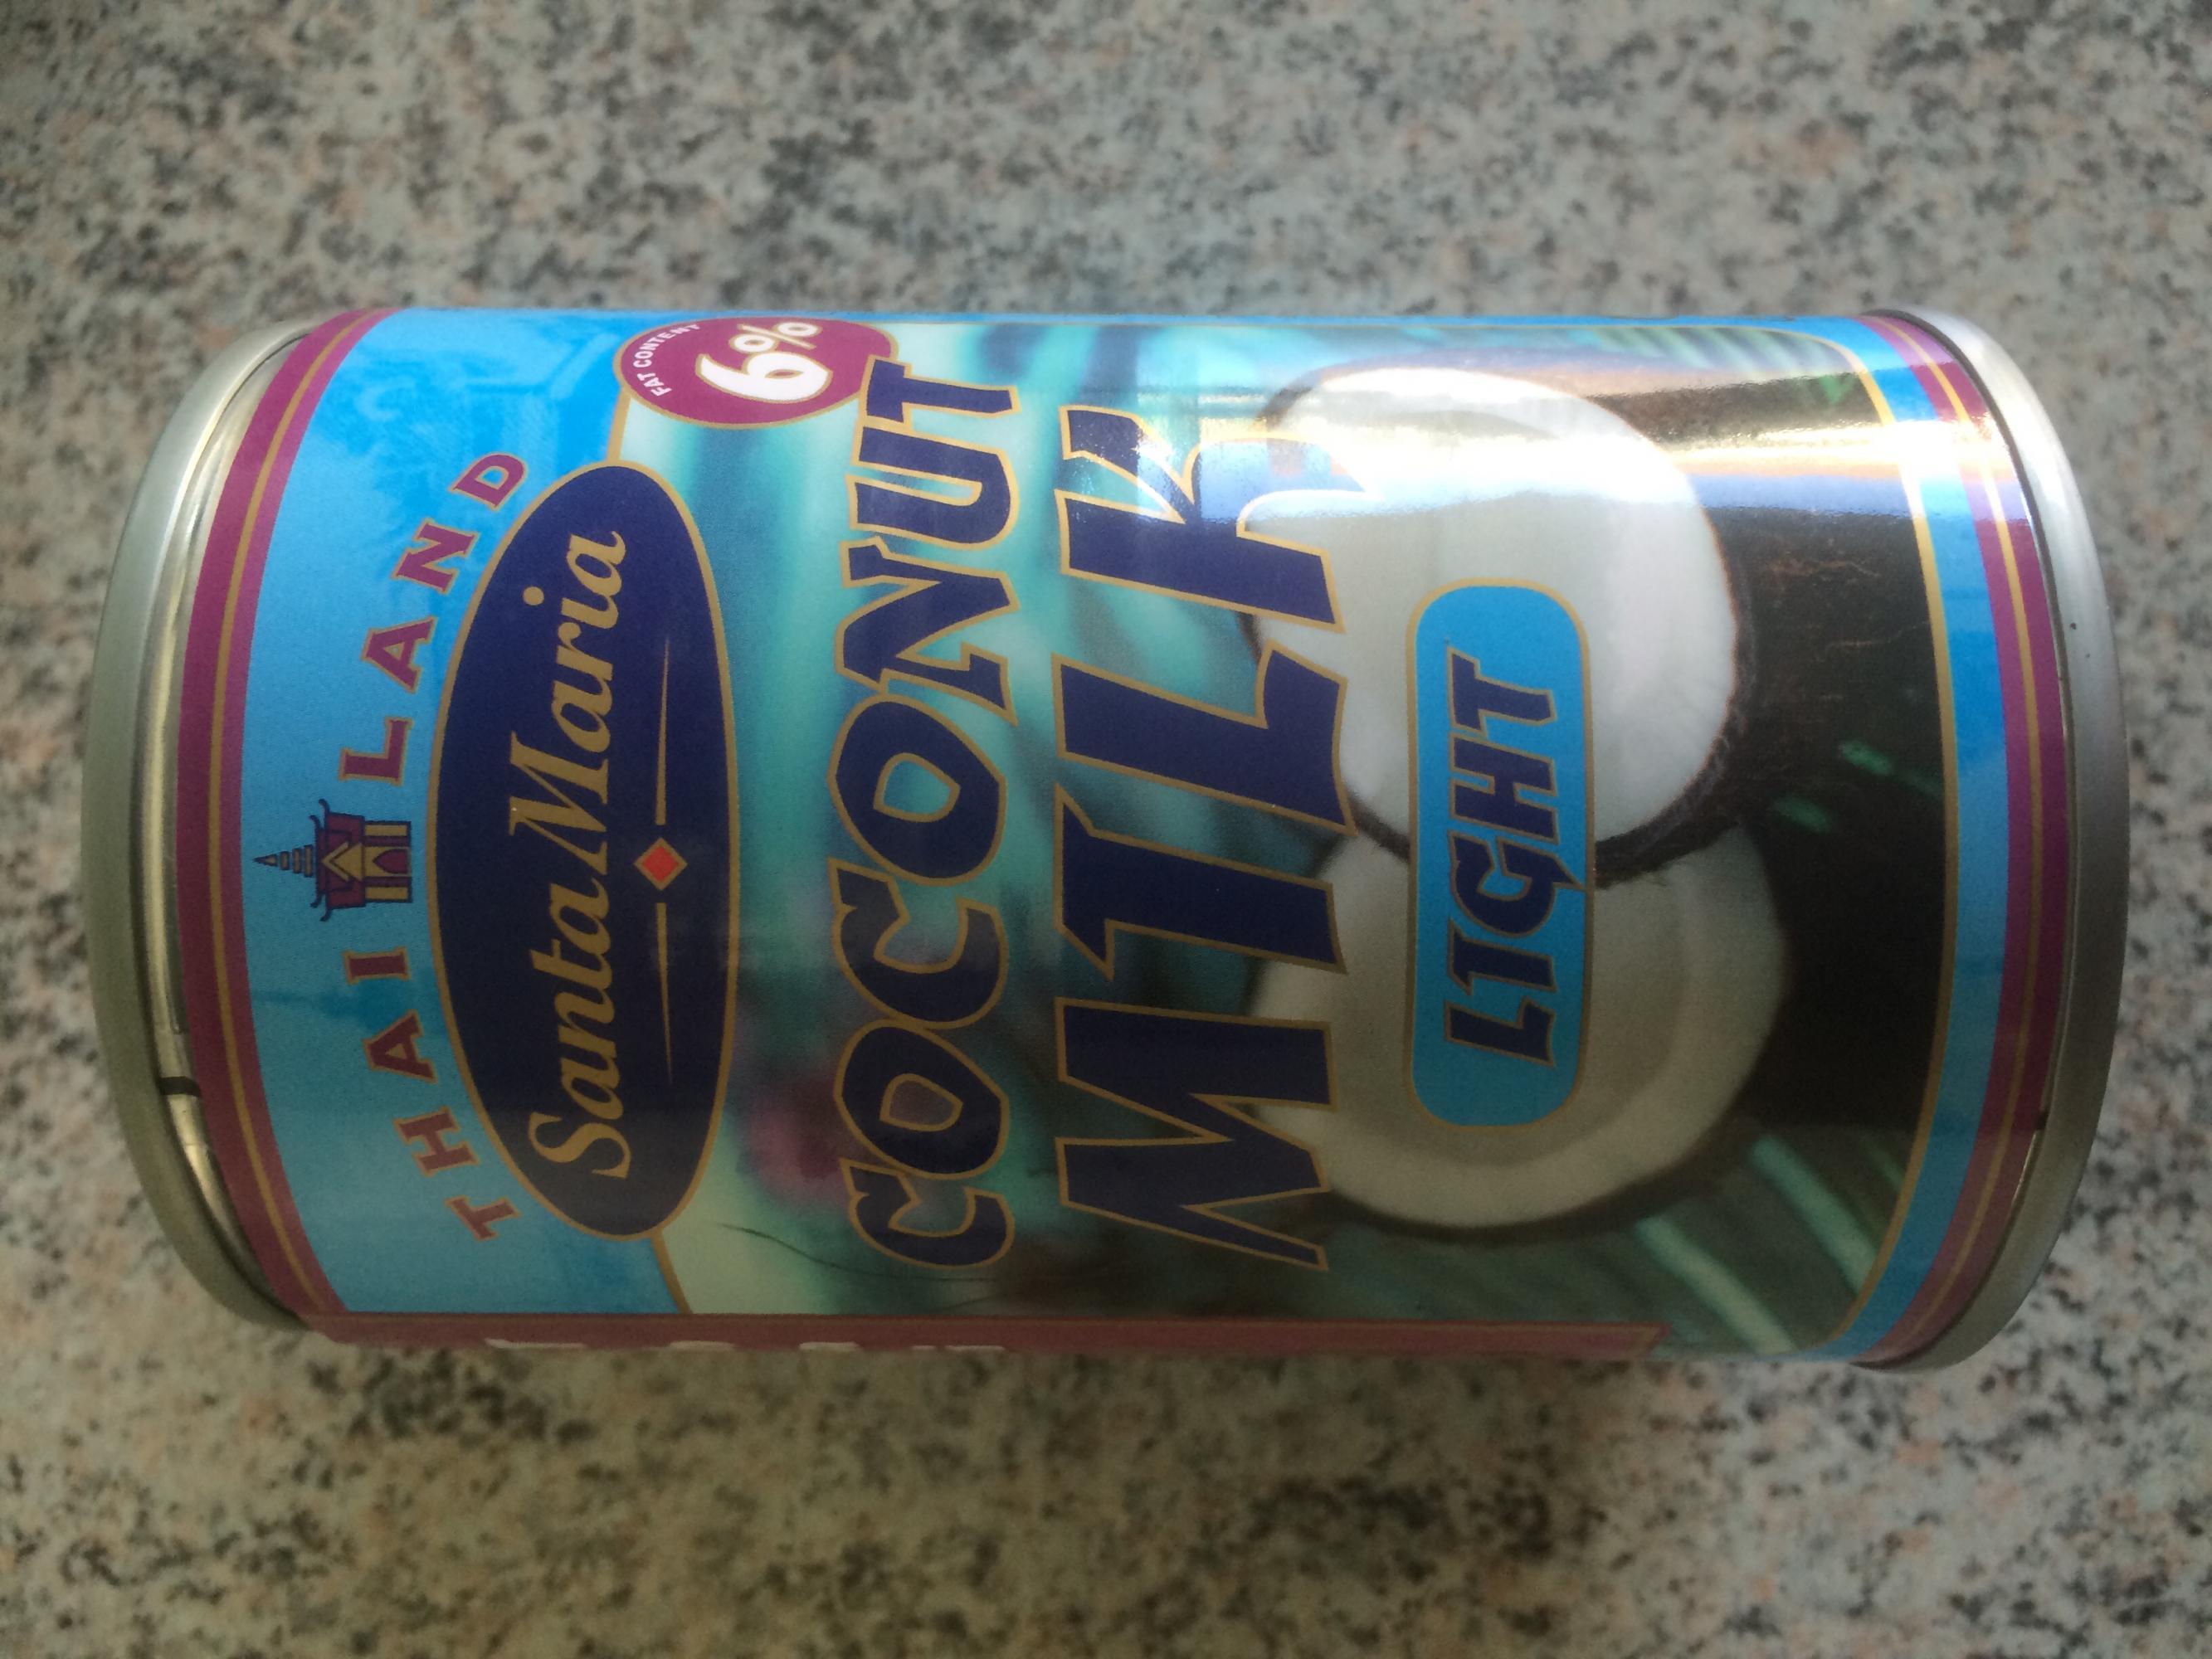 tyfon Brug for sten Kokosmælk light 6% (Santa Maria Coconut milk) - Ukategoriseret - Fødevarer  - Vægttab.nu